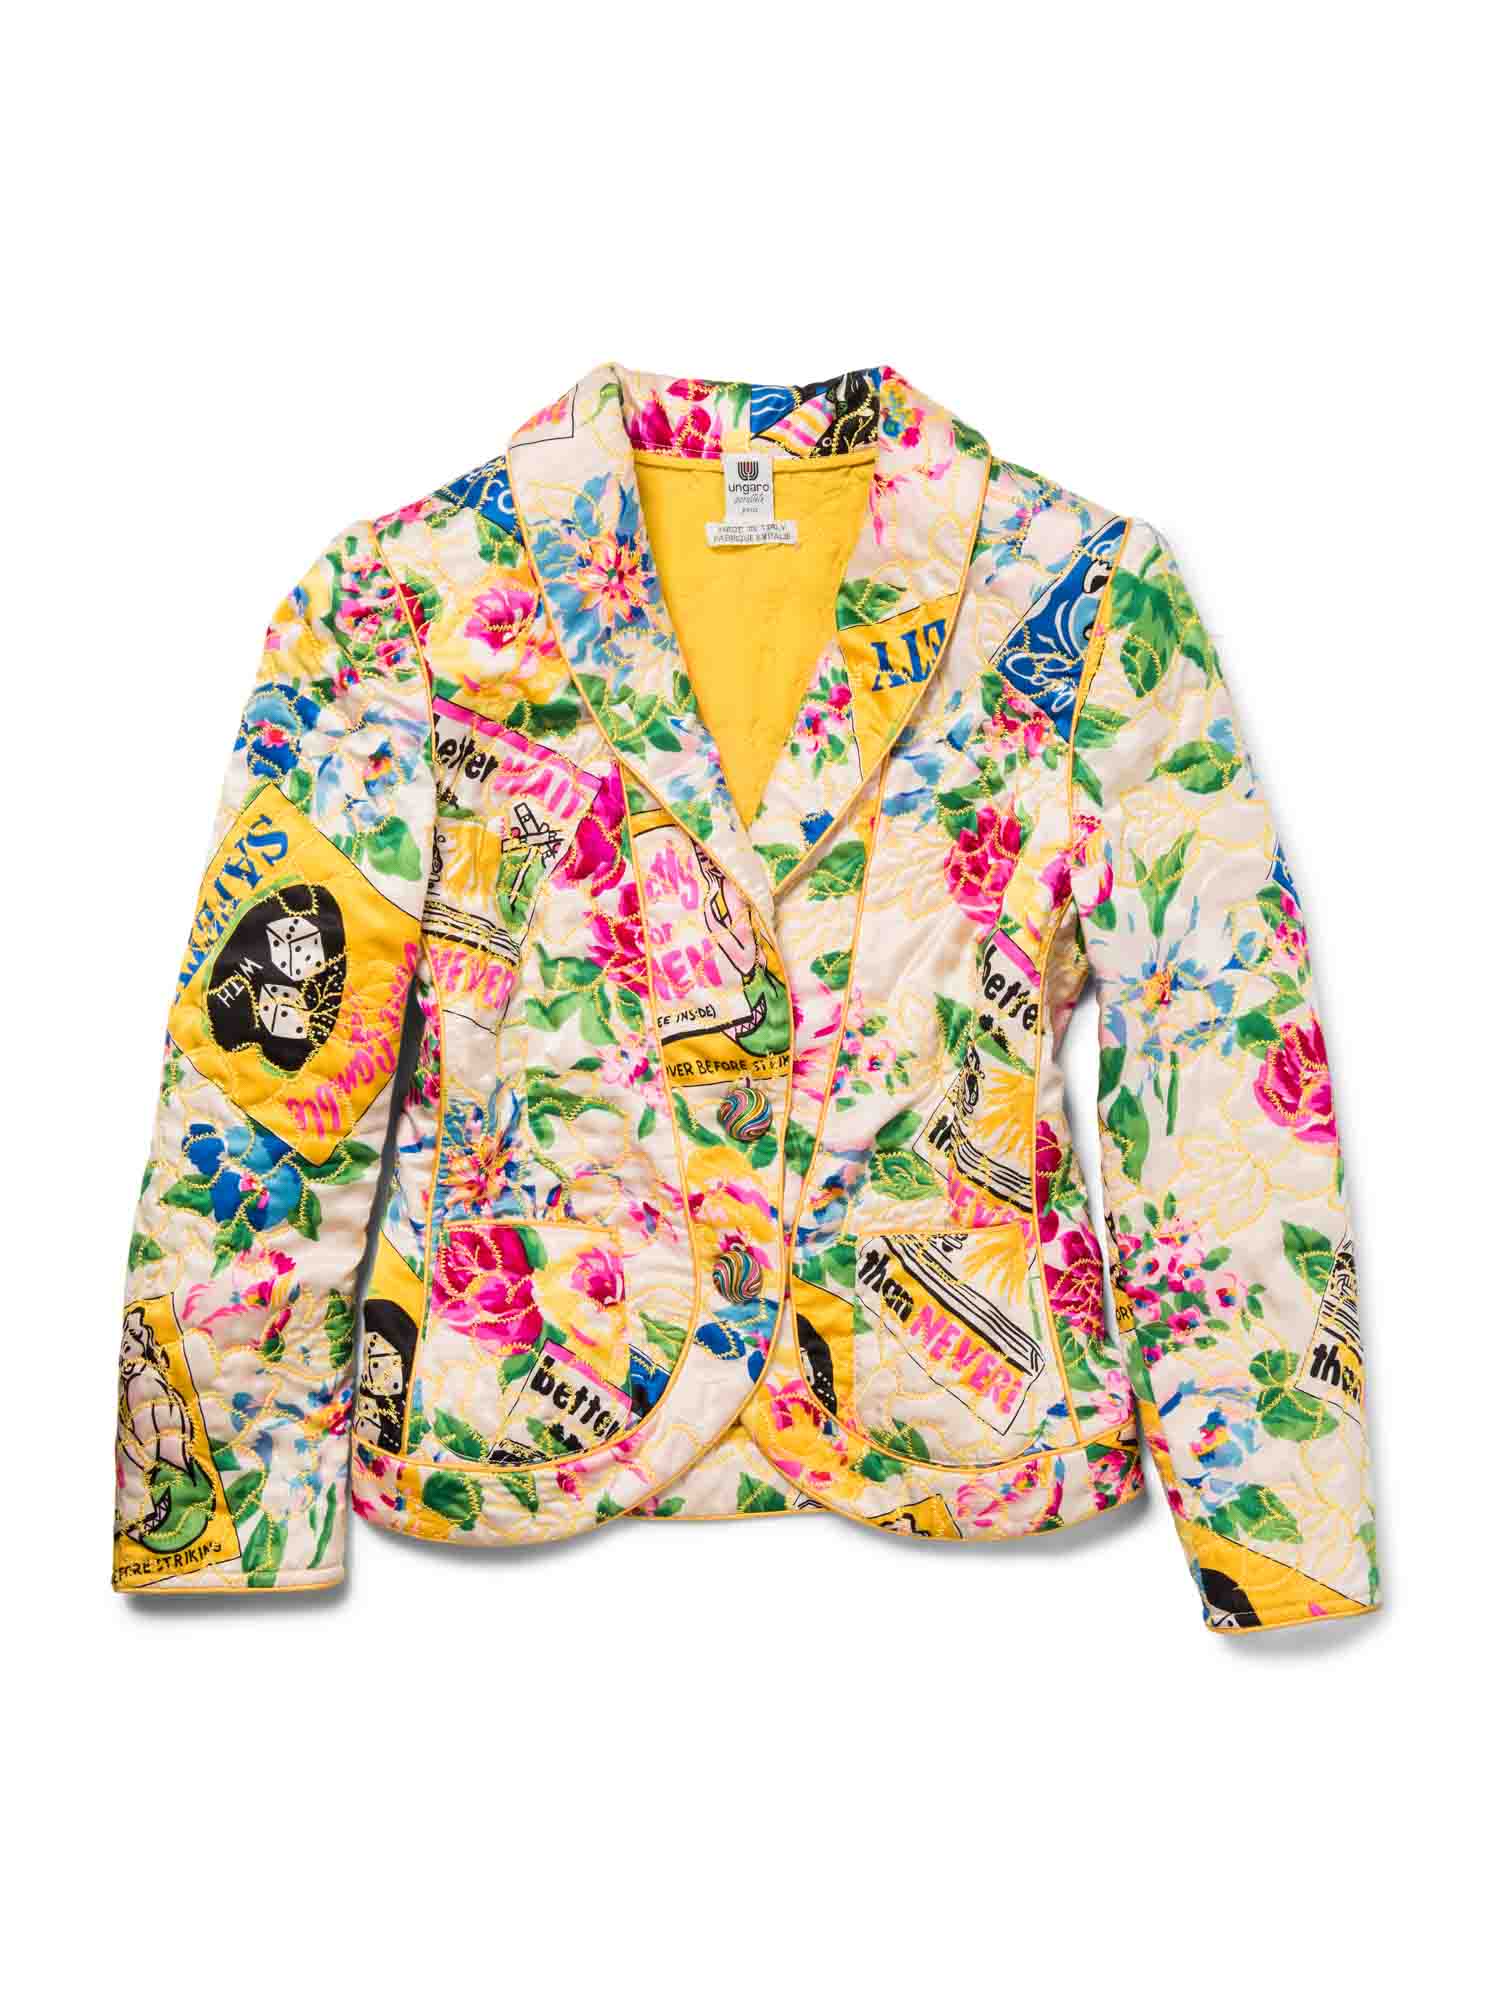 Emanuel Ungraro Vintage Embroidered Quilted Silk Jacket Multicolor-designer resale